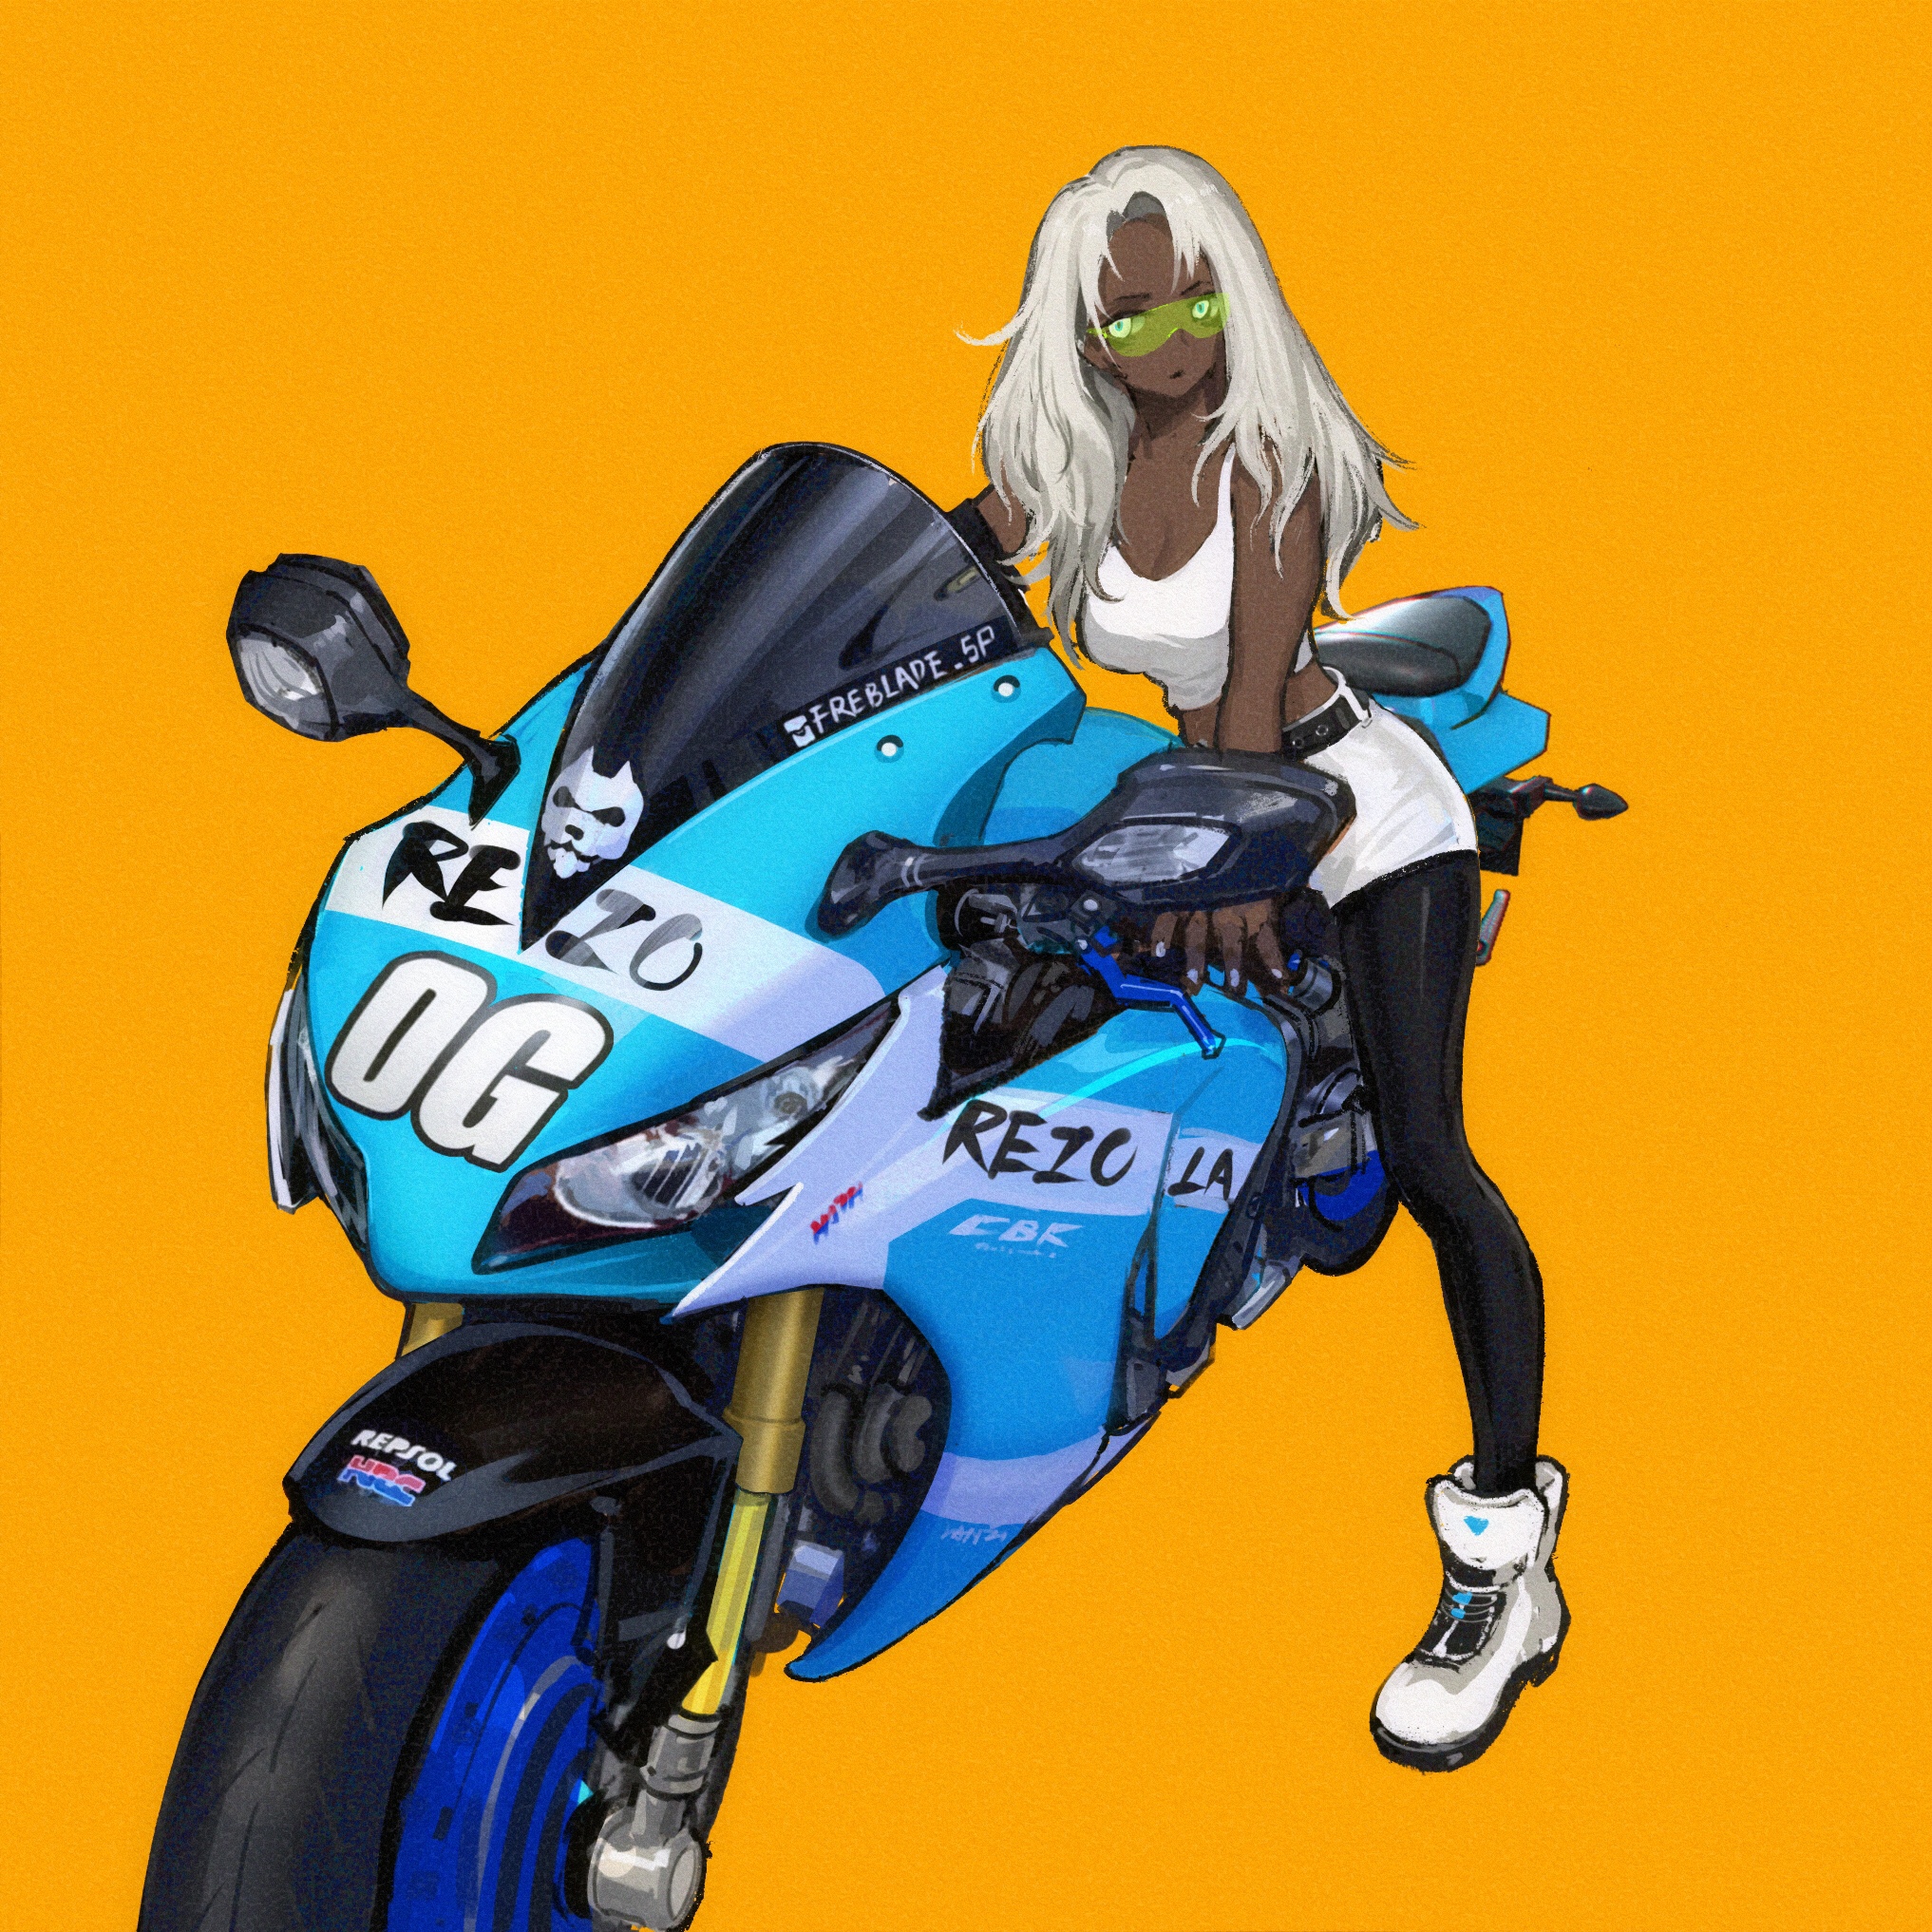 Motorcycle girl插画图片壁纸